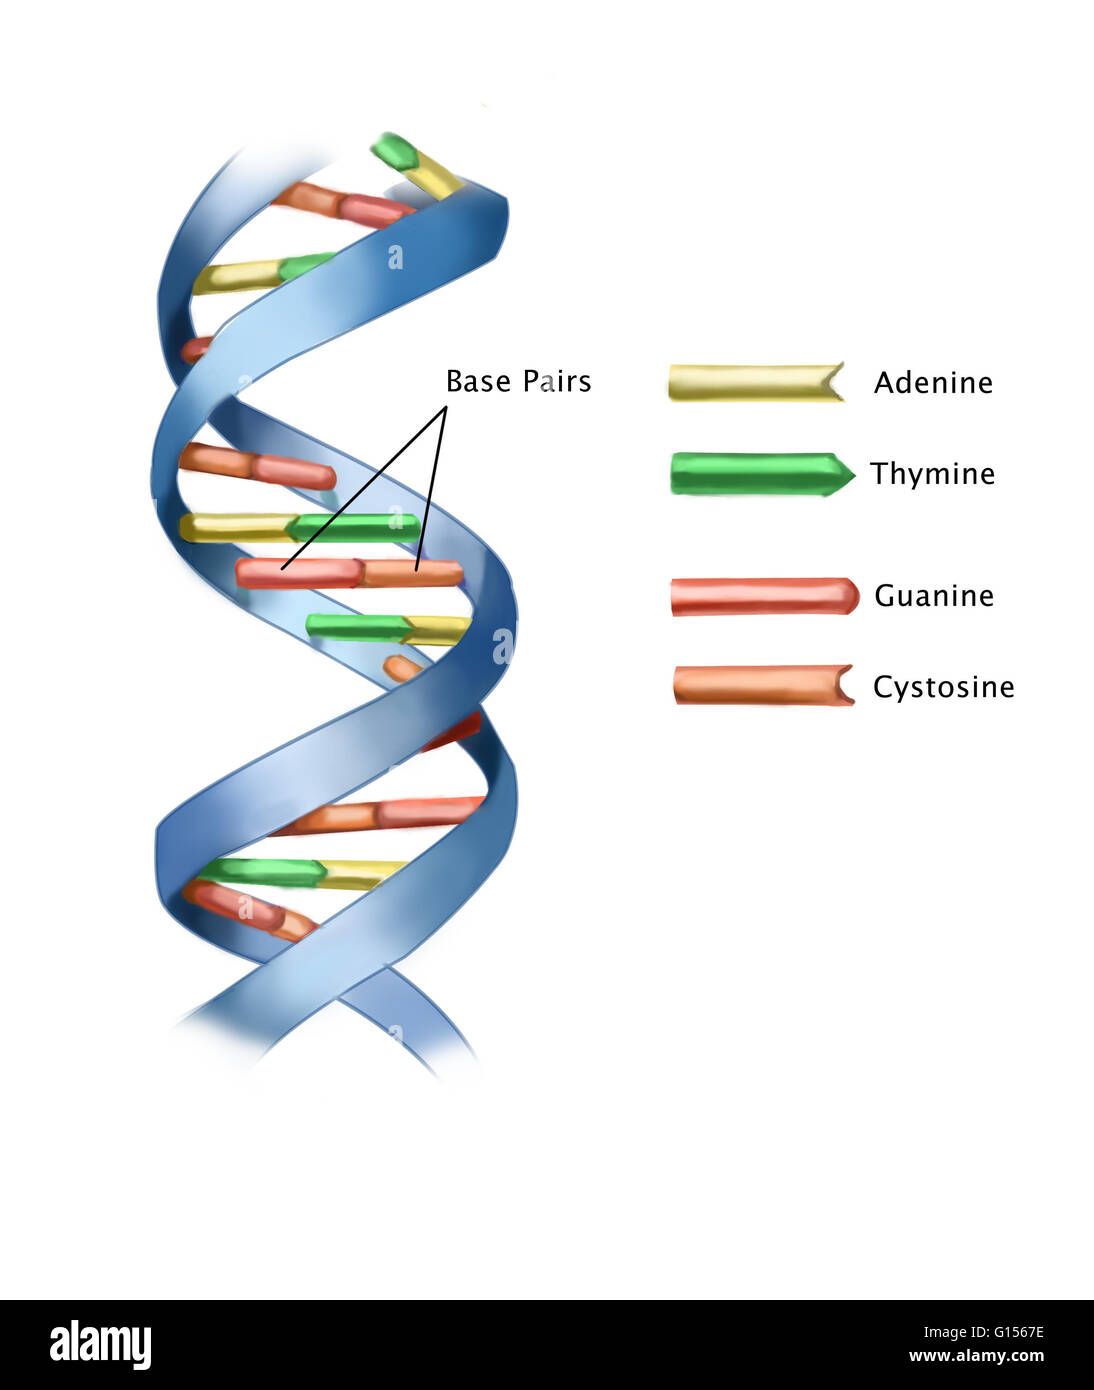 Illustrazione di una parte di un filamento di DNA (acido  desossiribonucleico), marcato con coppie di basi. La molecola di DNA è una  doppia elica disposizione, essendo composta di due spirale destrorsa trefoli